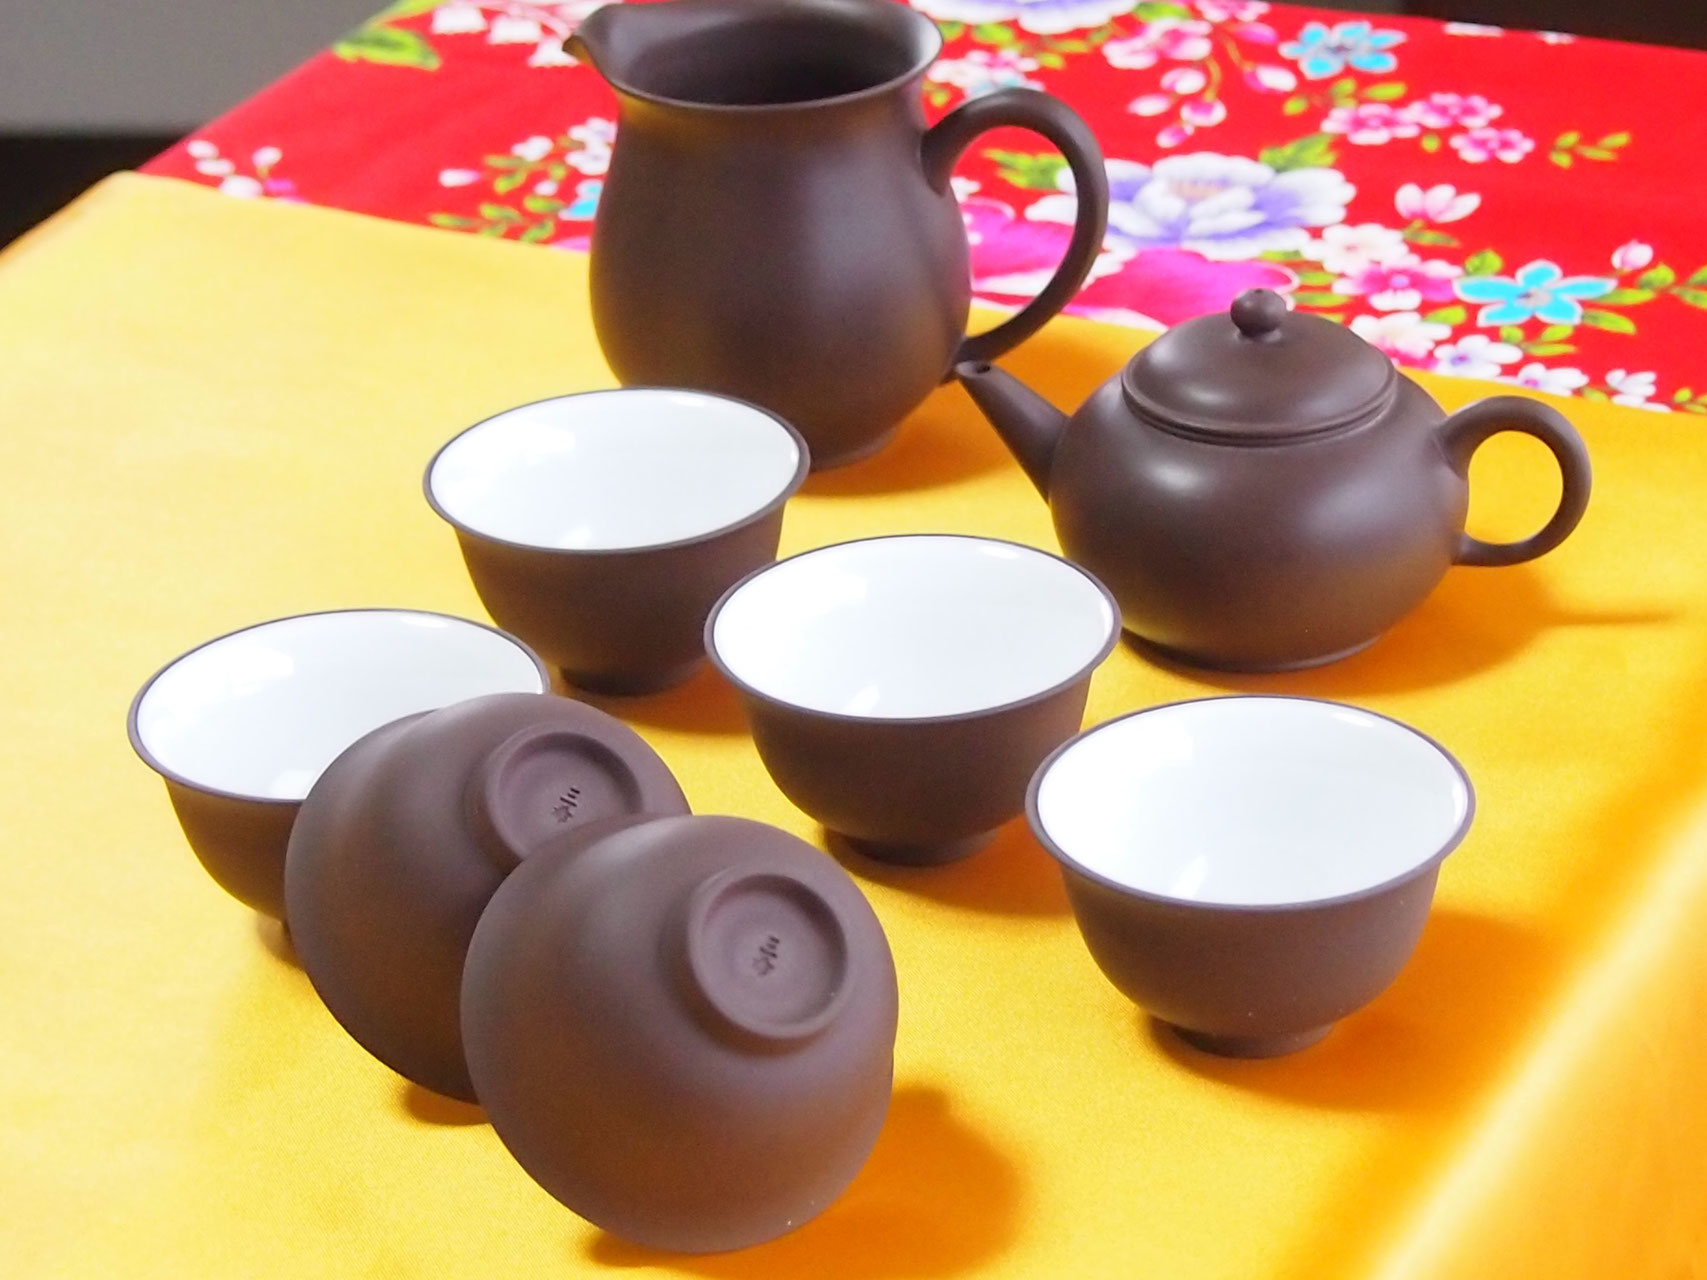 台湾茶器セット